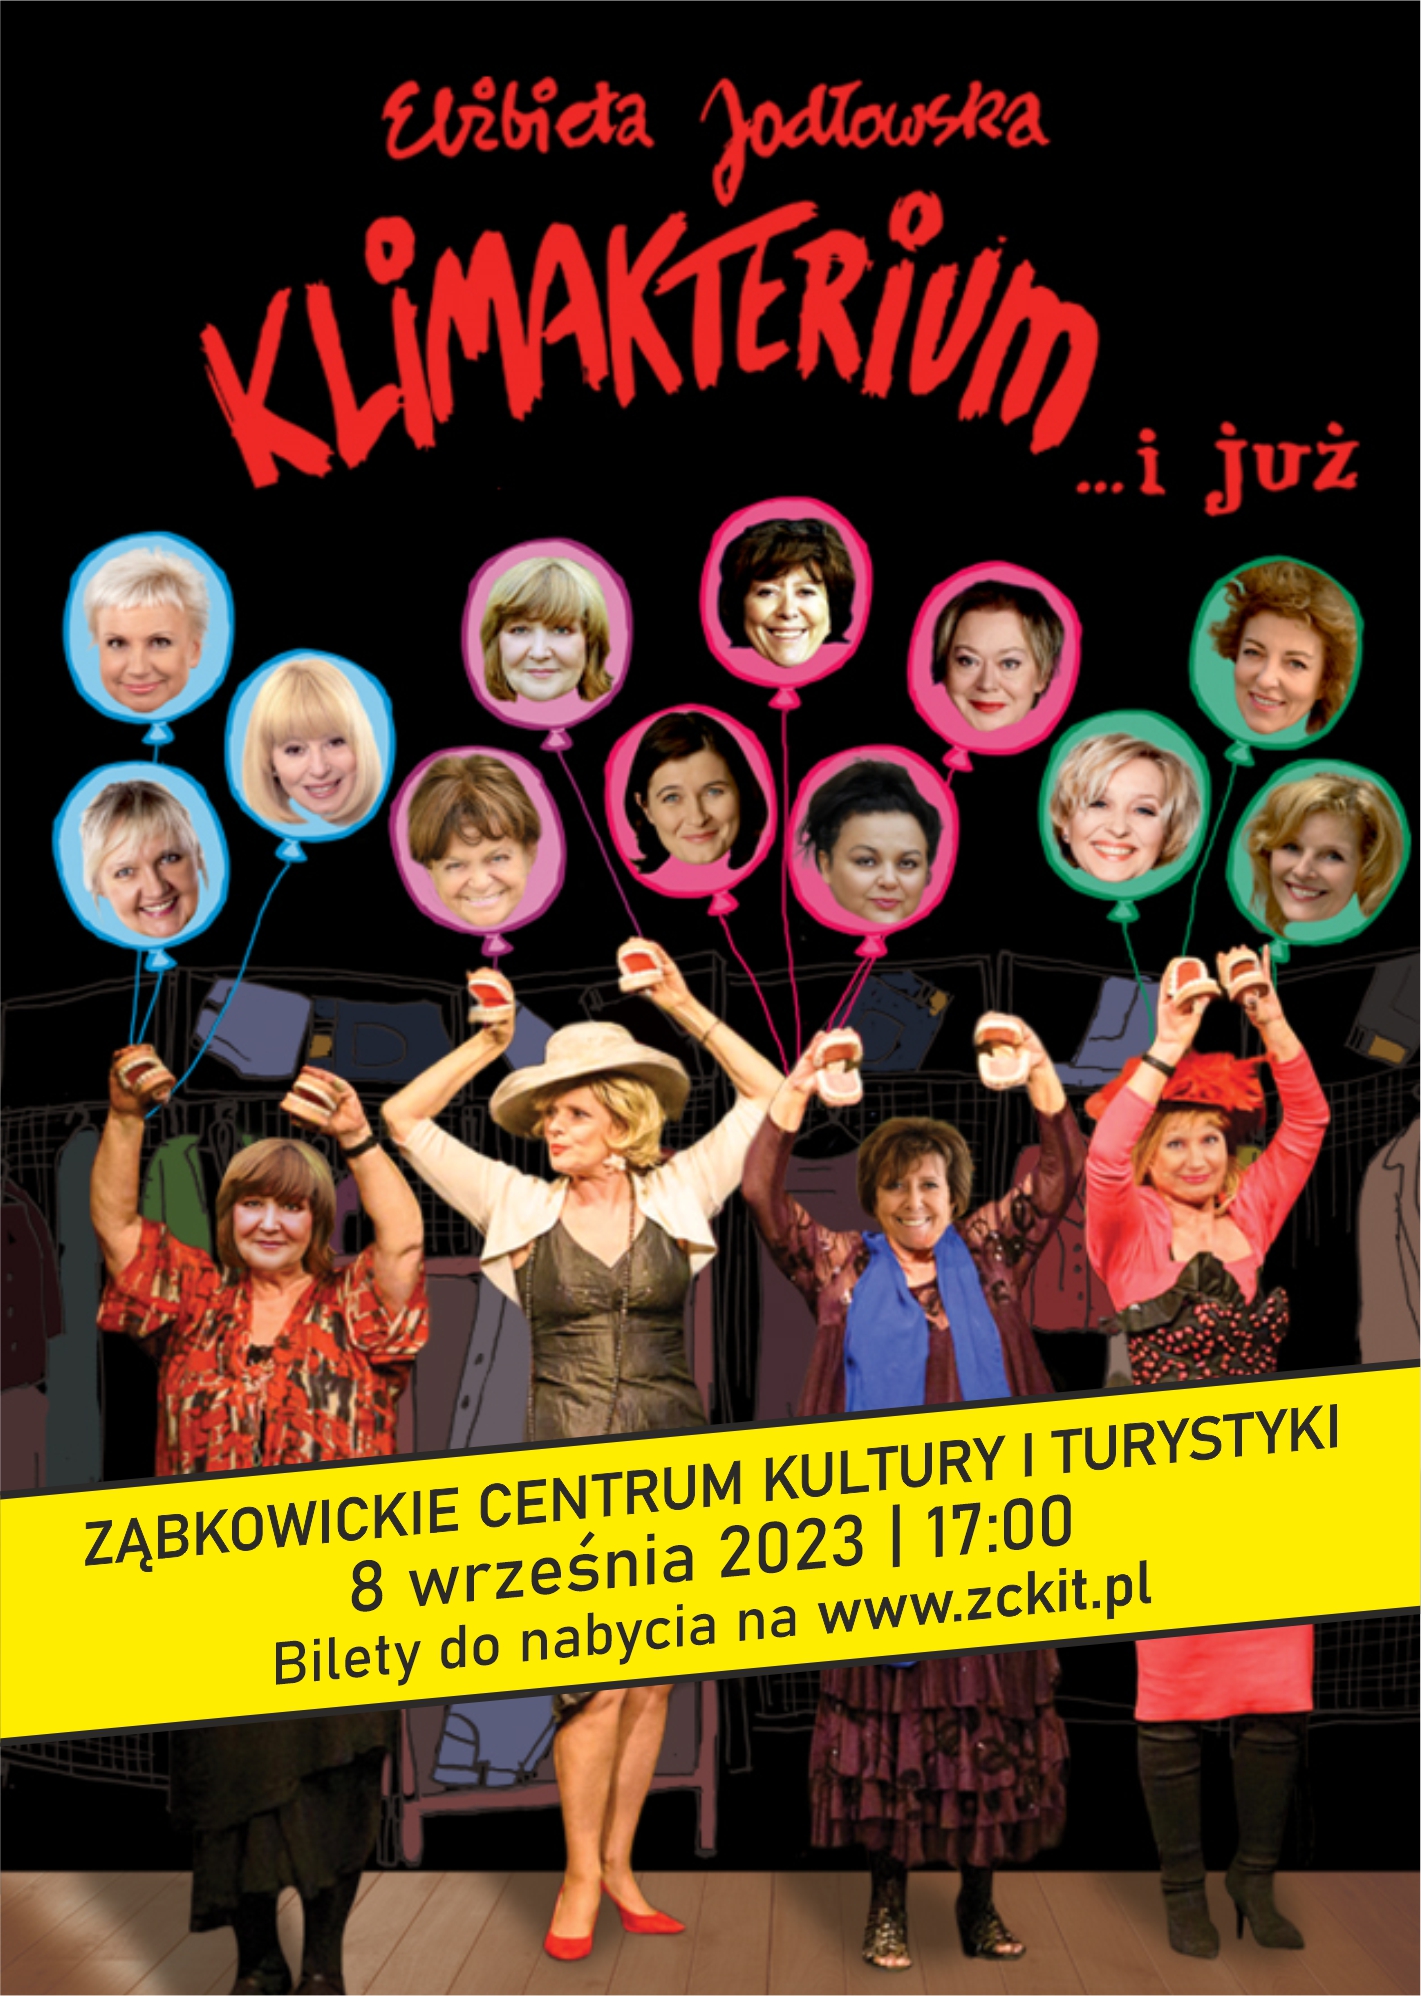 Plakat informujący o spektaklu Elżbiety Jadłowskiej KLIMAKTERIUM I JUŻ, który odbył się w Ząbkowickim Centrum Kultury i Turystyki 8 września 2023r